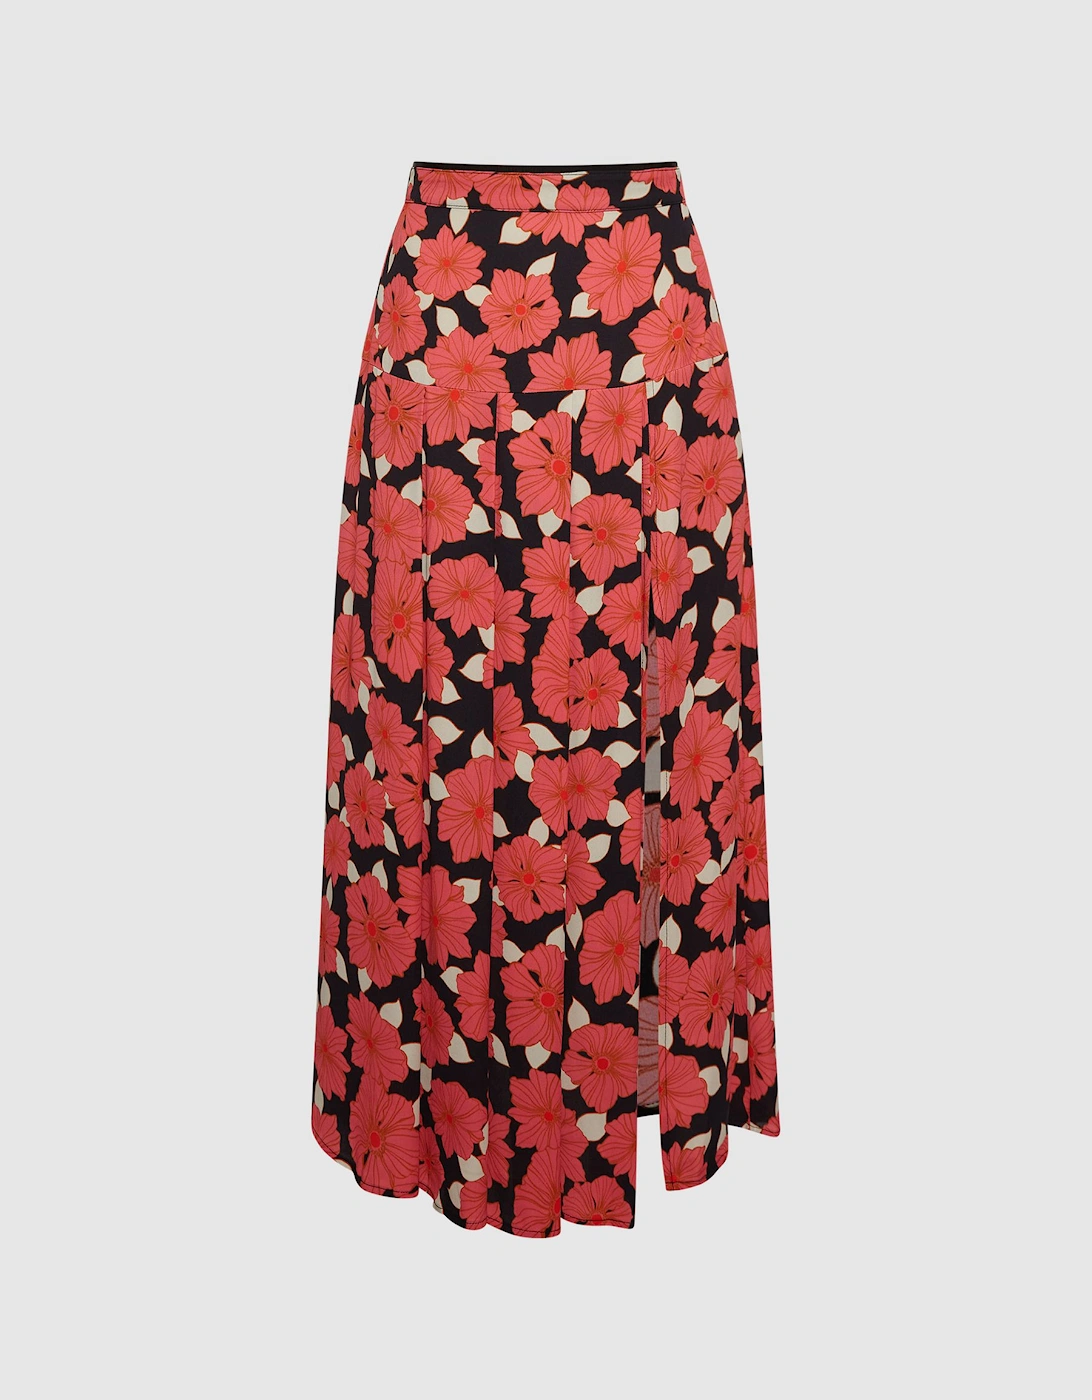 Printed Slip Skirt, 2 of 1